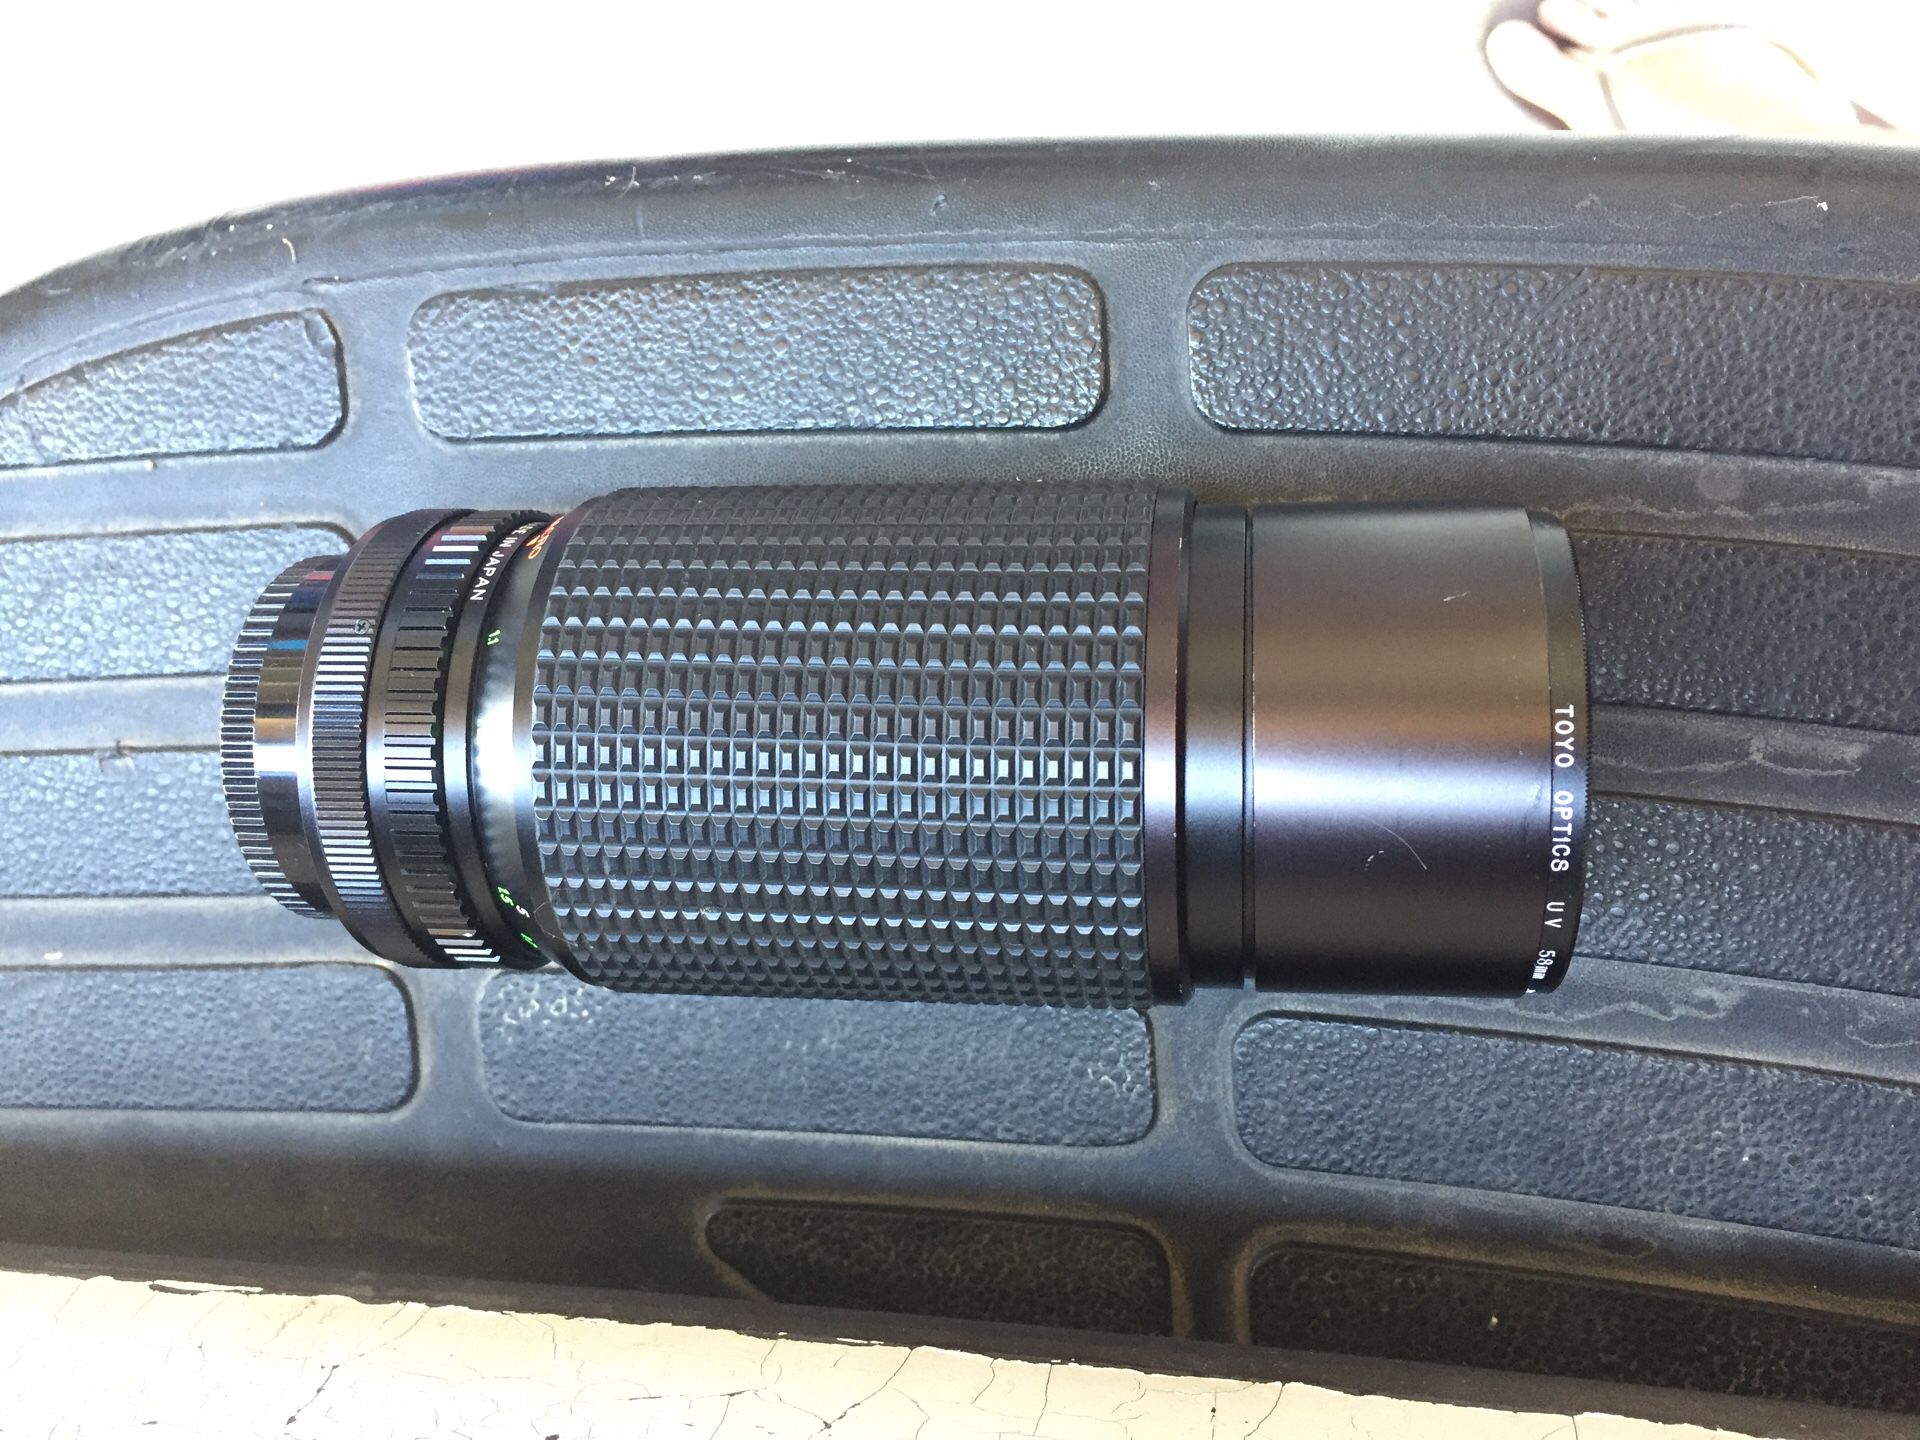 Cannon 200mm lense